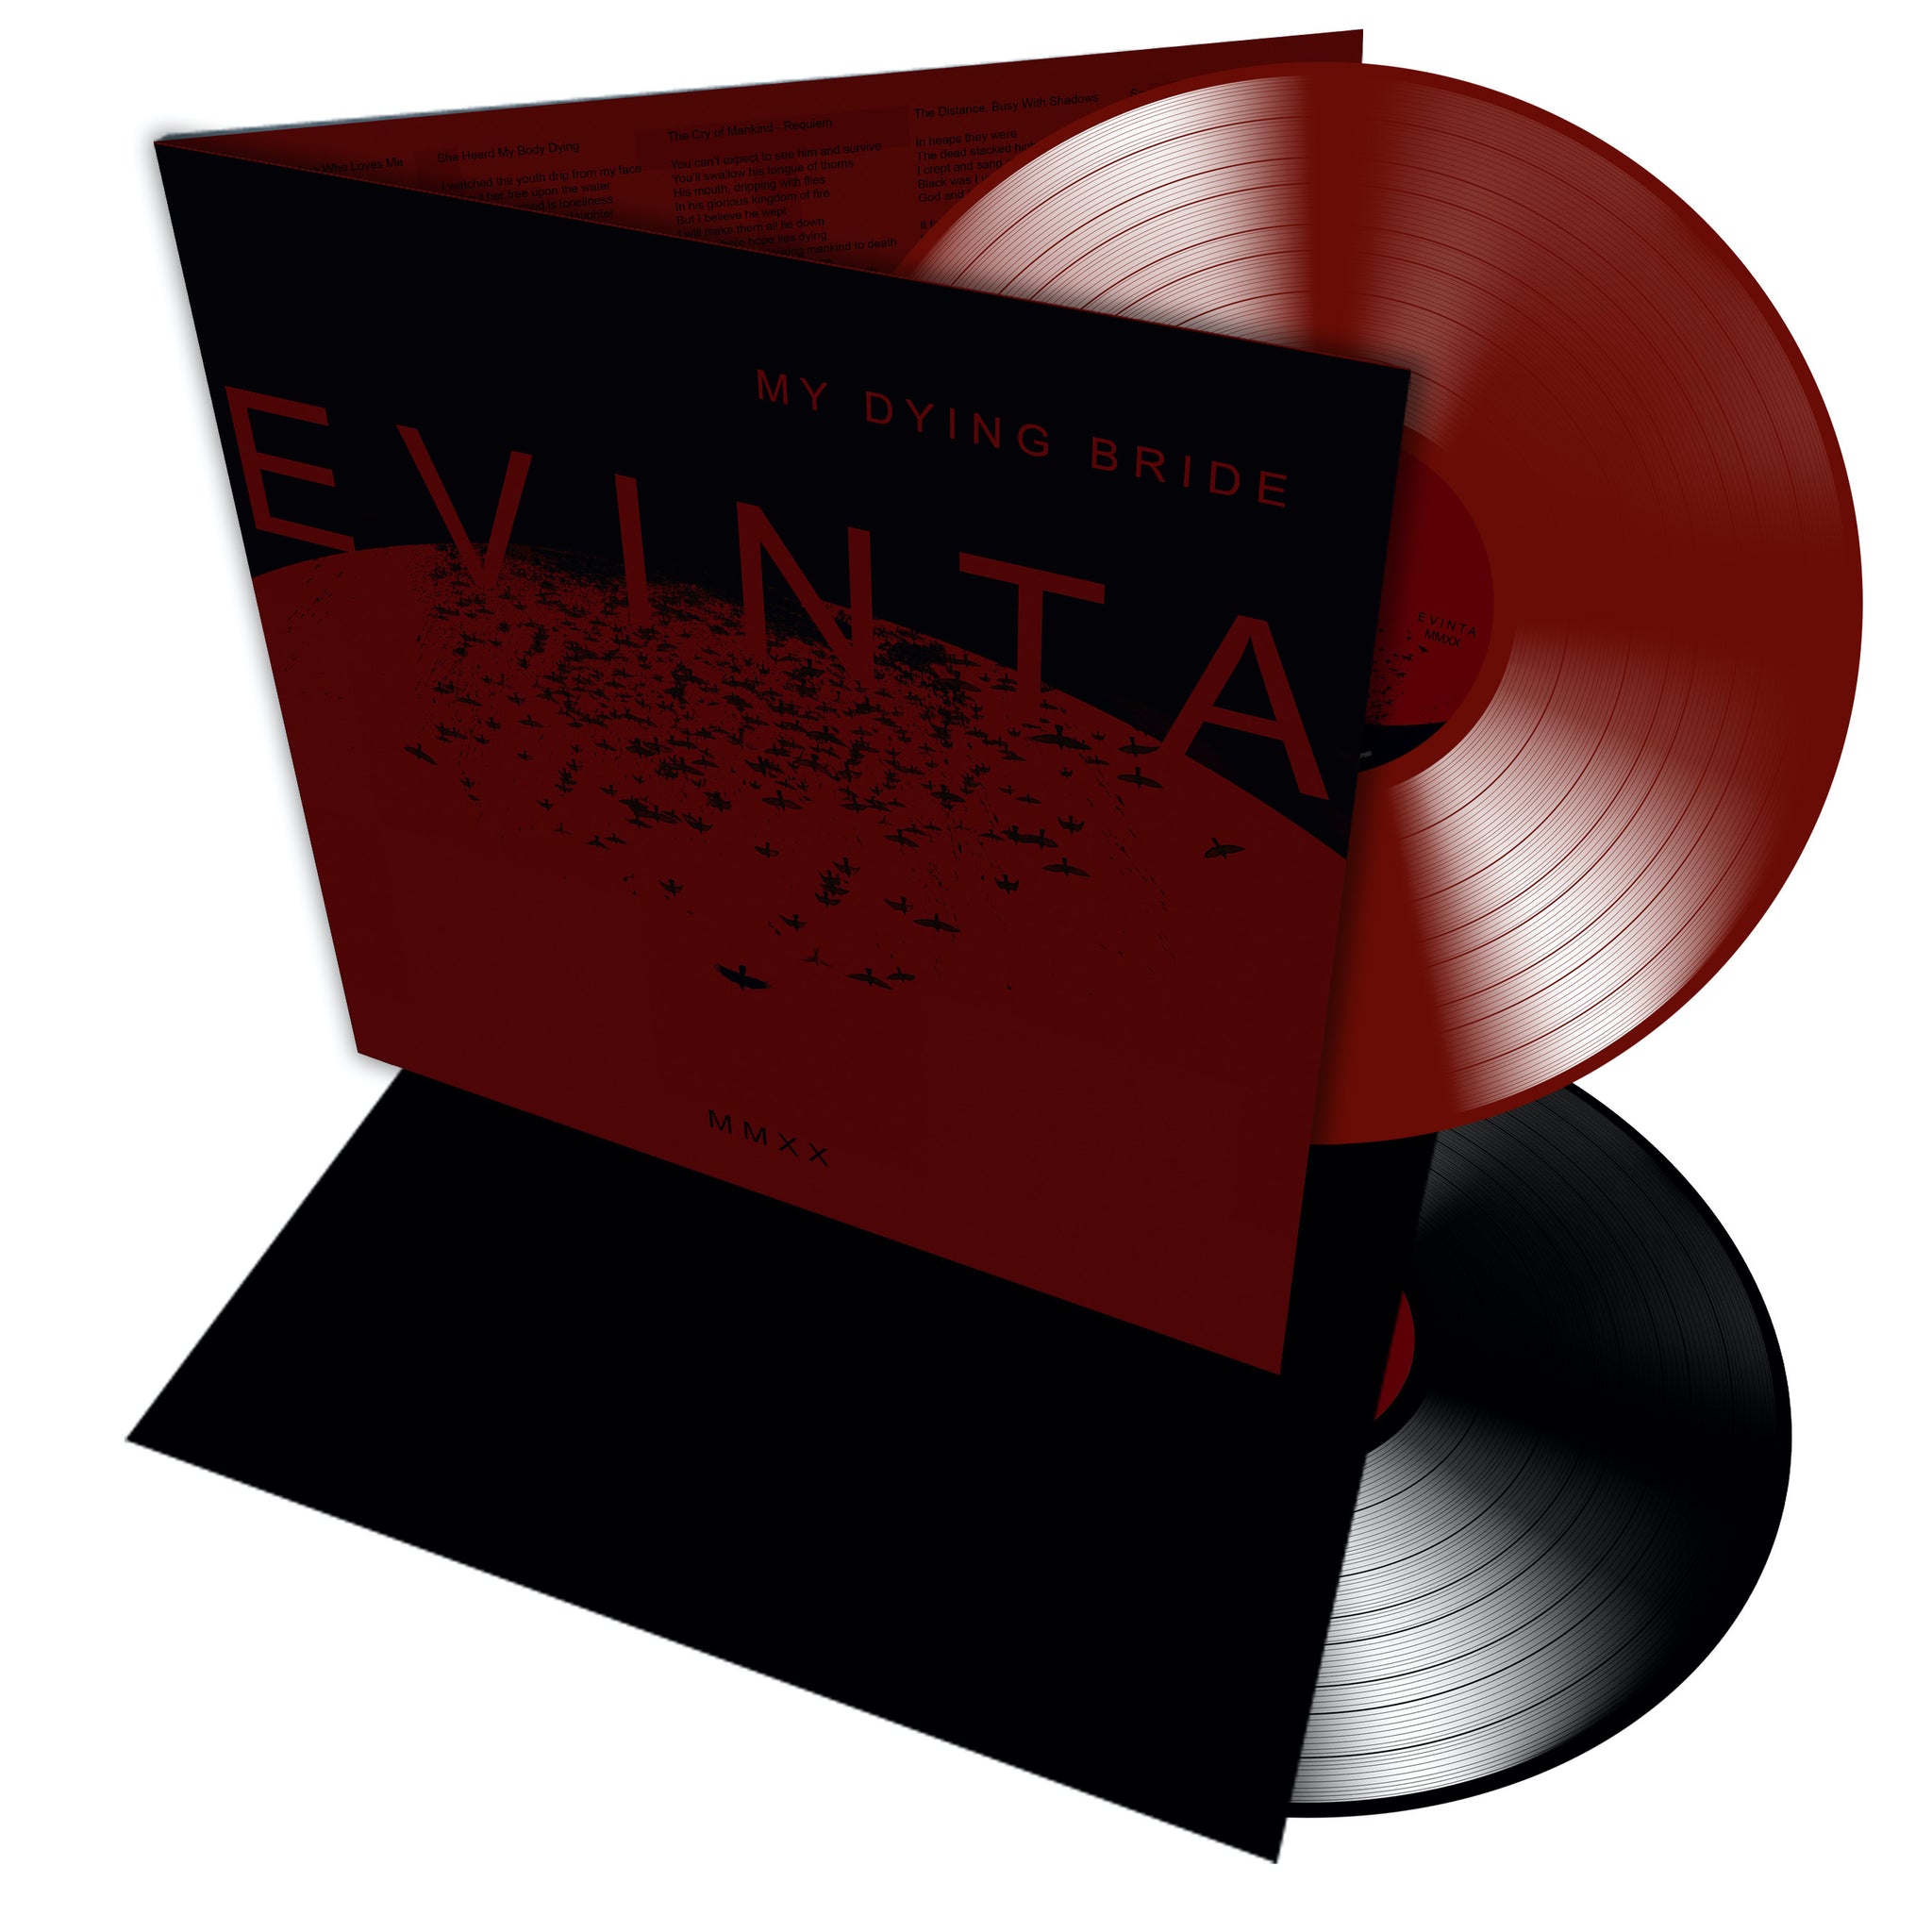 My Dying Bride "Evinta MMXX" 2x12" Vinyl